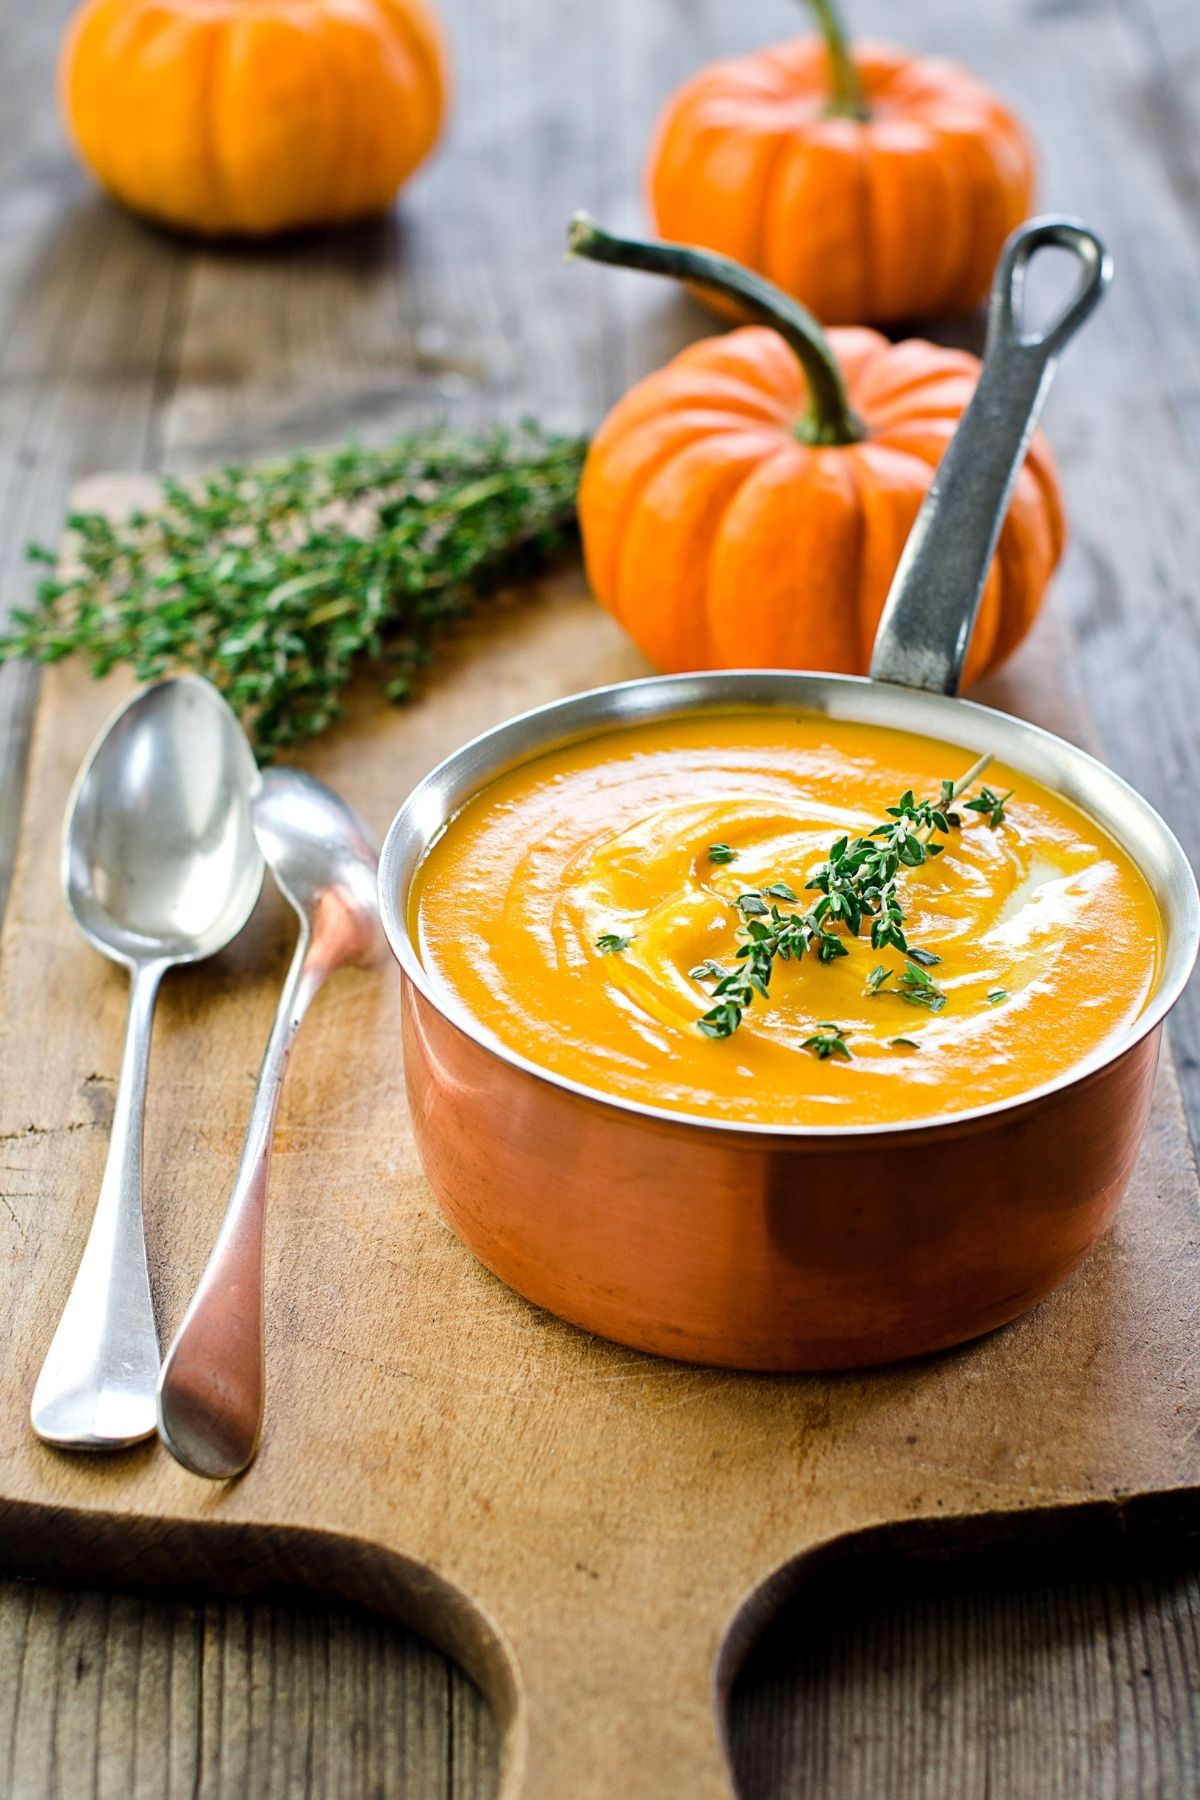 Pumpkin Recipes You'll Love: Easy + Quick